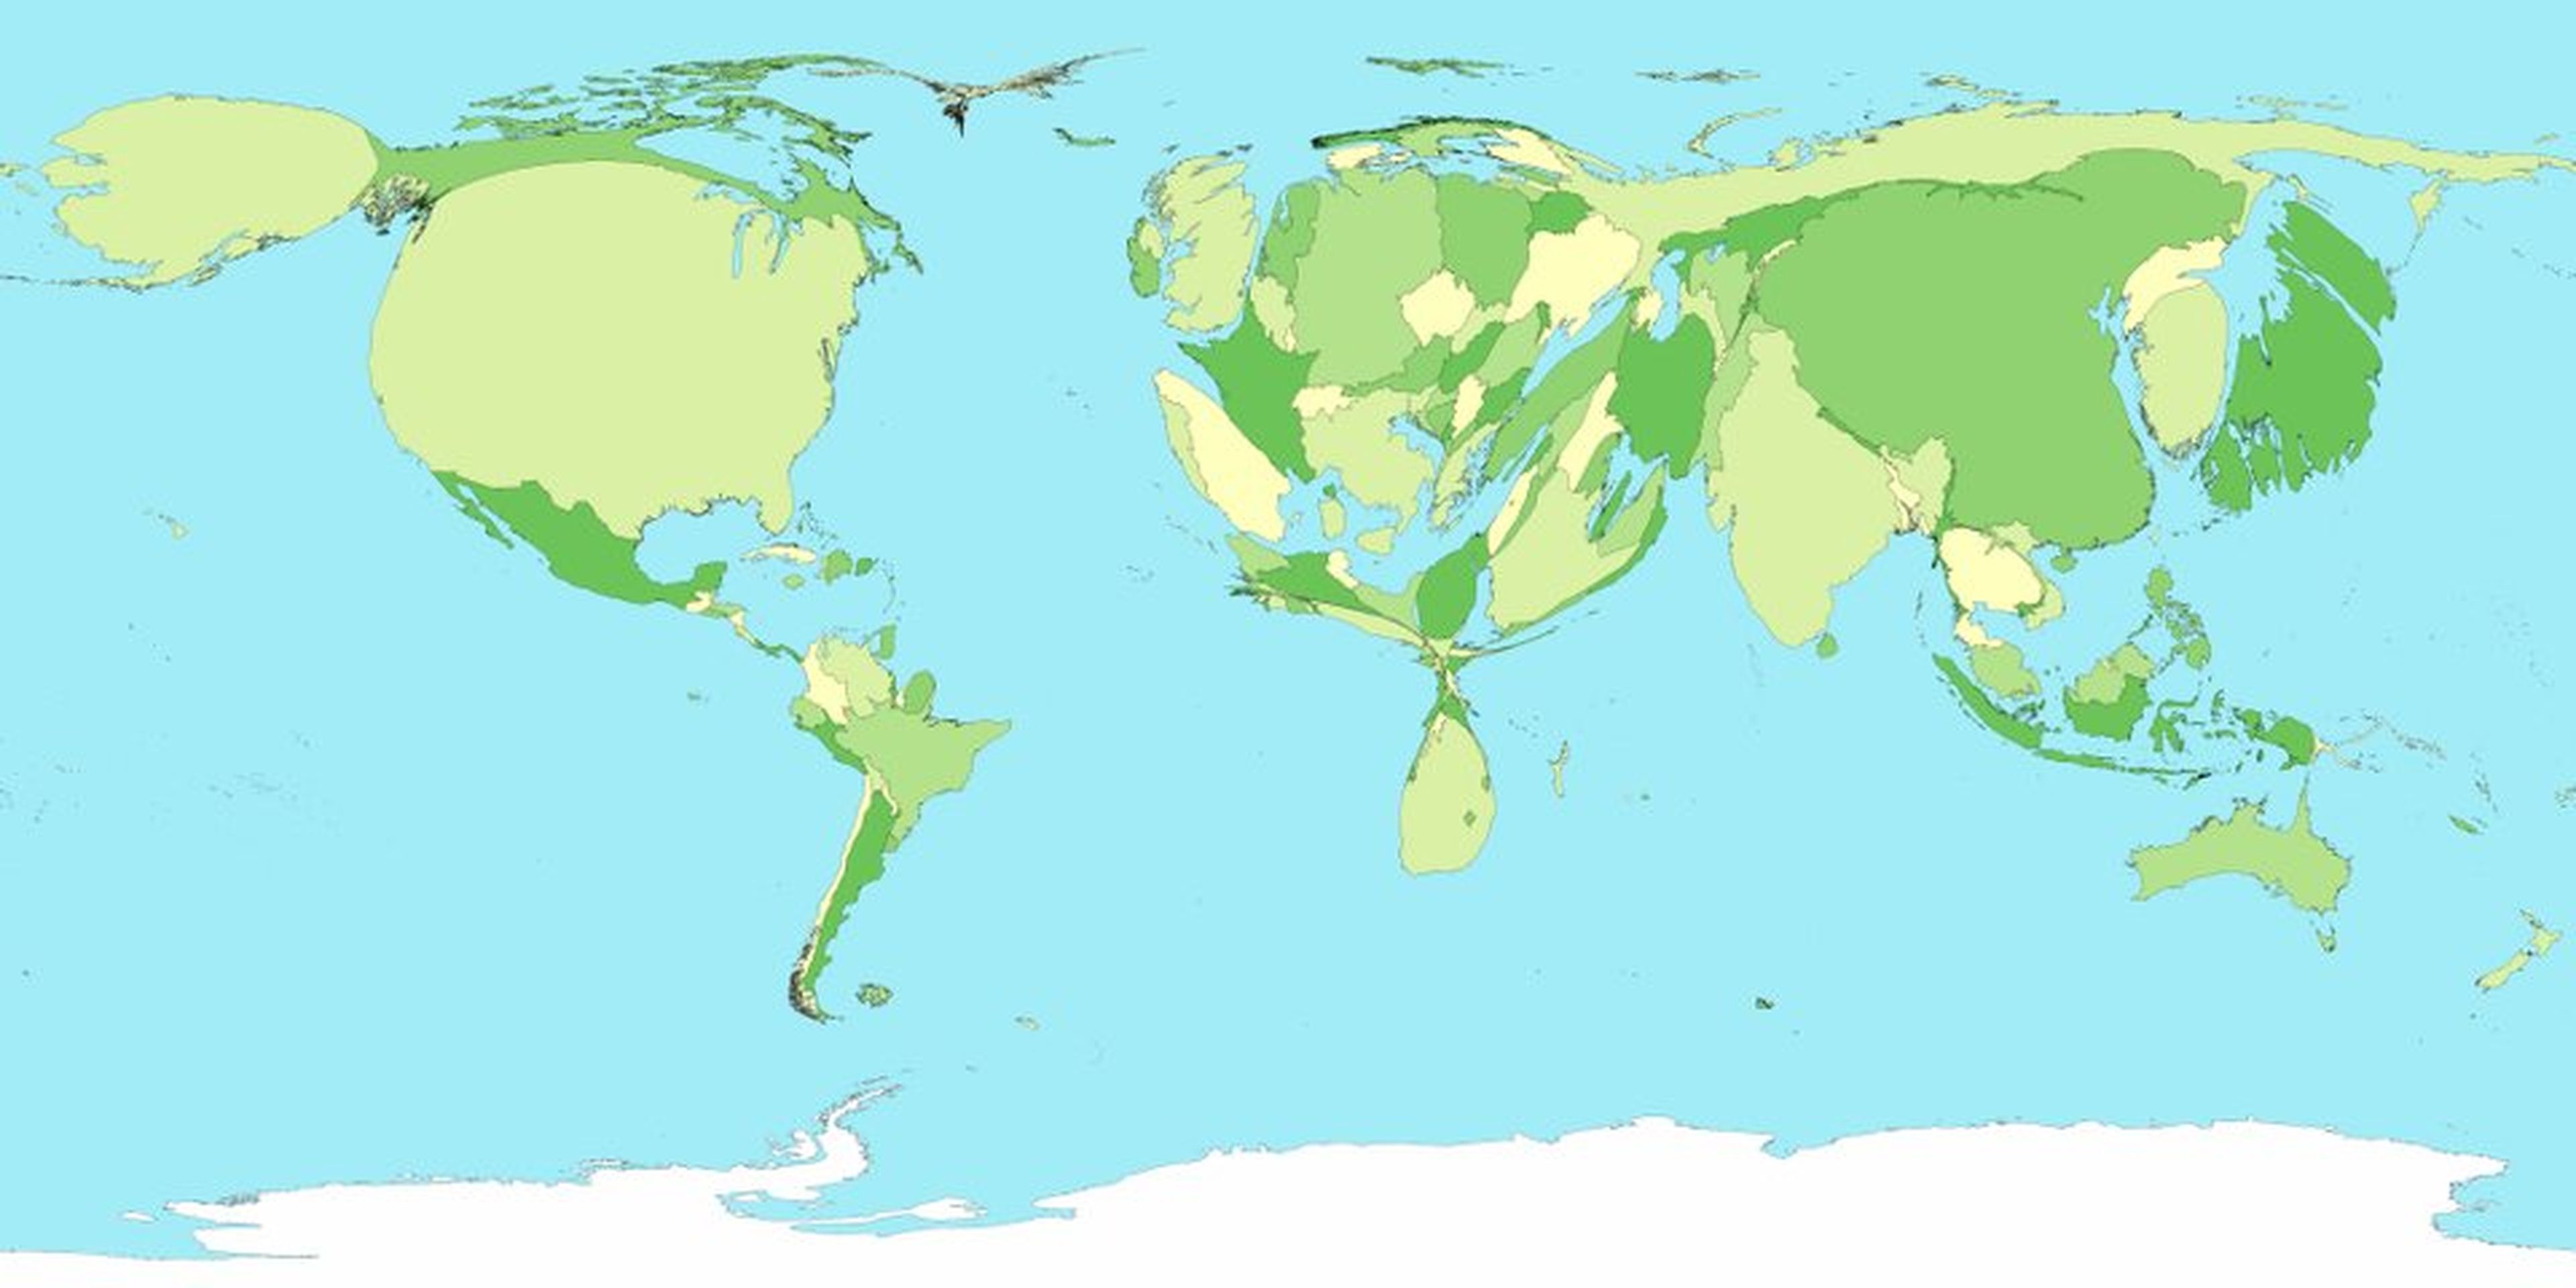 mapa del mundo según emisiones co2